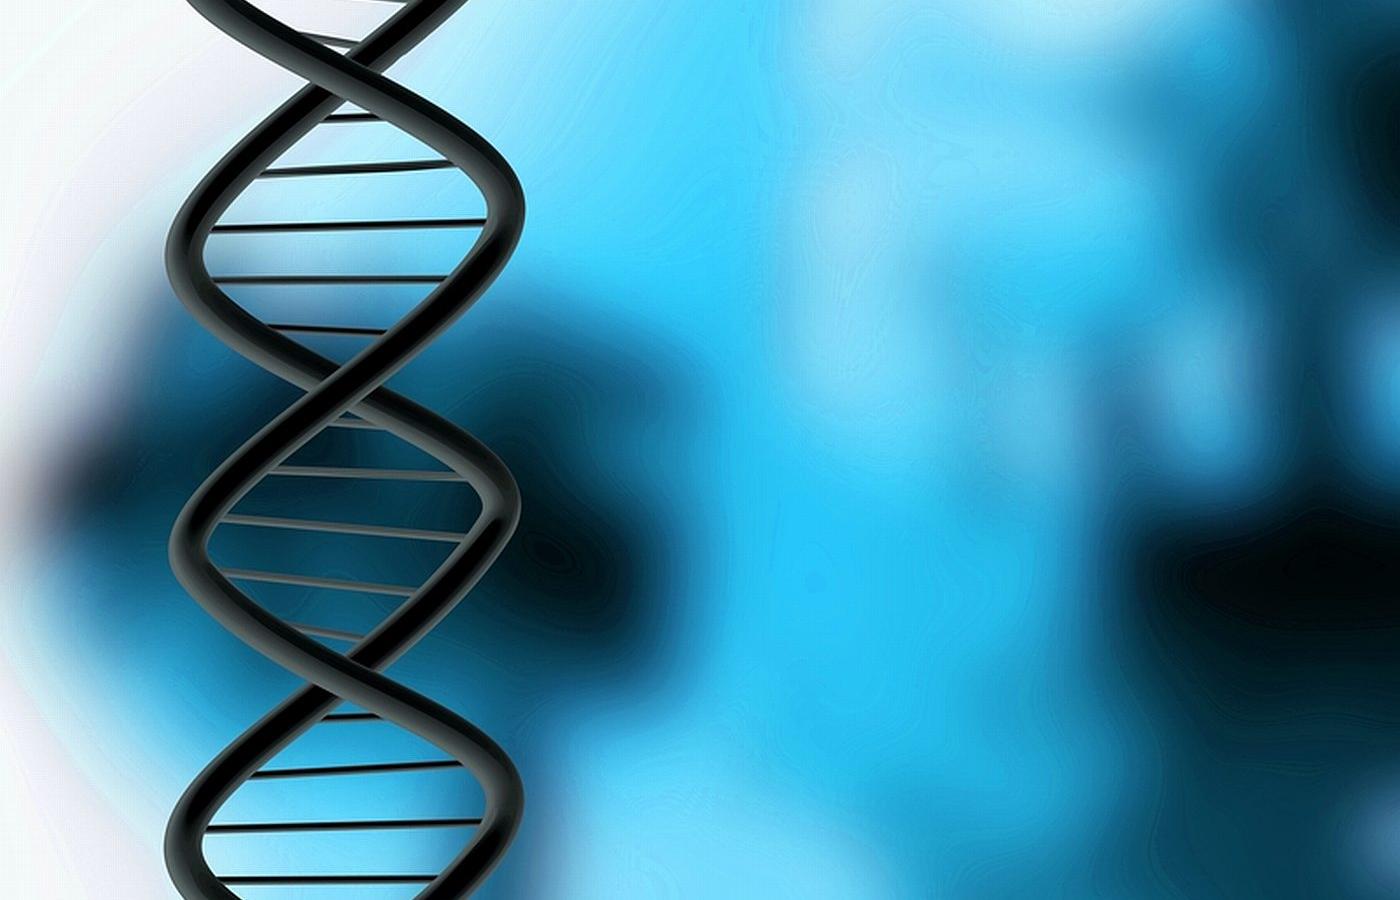 Dziś testy DNA na ojcostwo zeszły pod strzechy. Liczba wykonywanych rocznie badań sięga kilkunastu tysięcy.